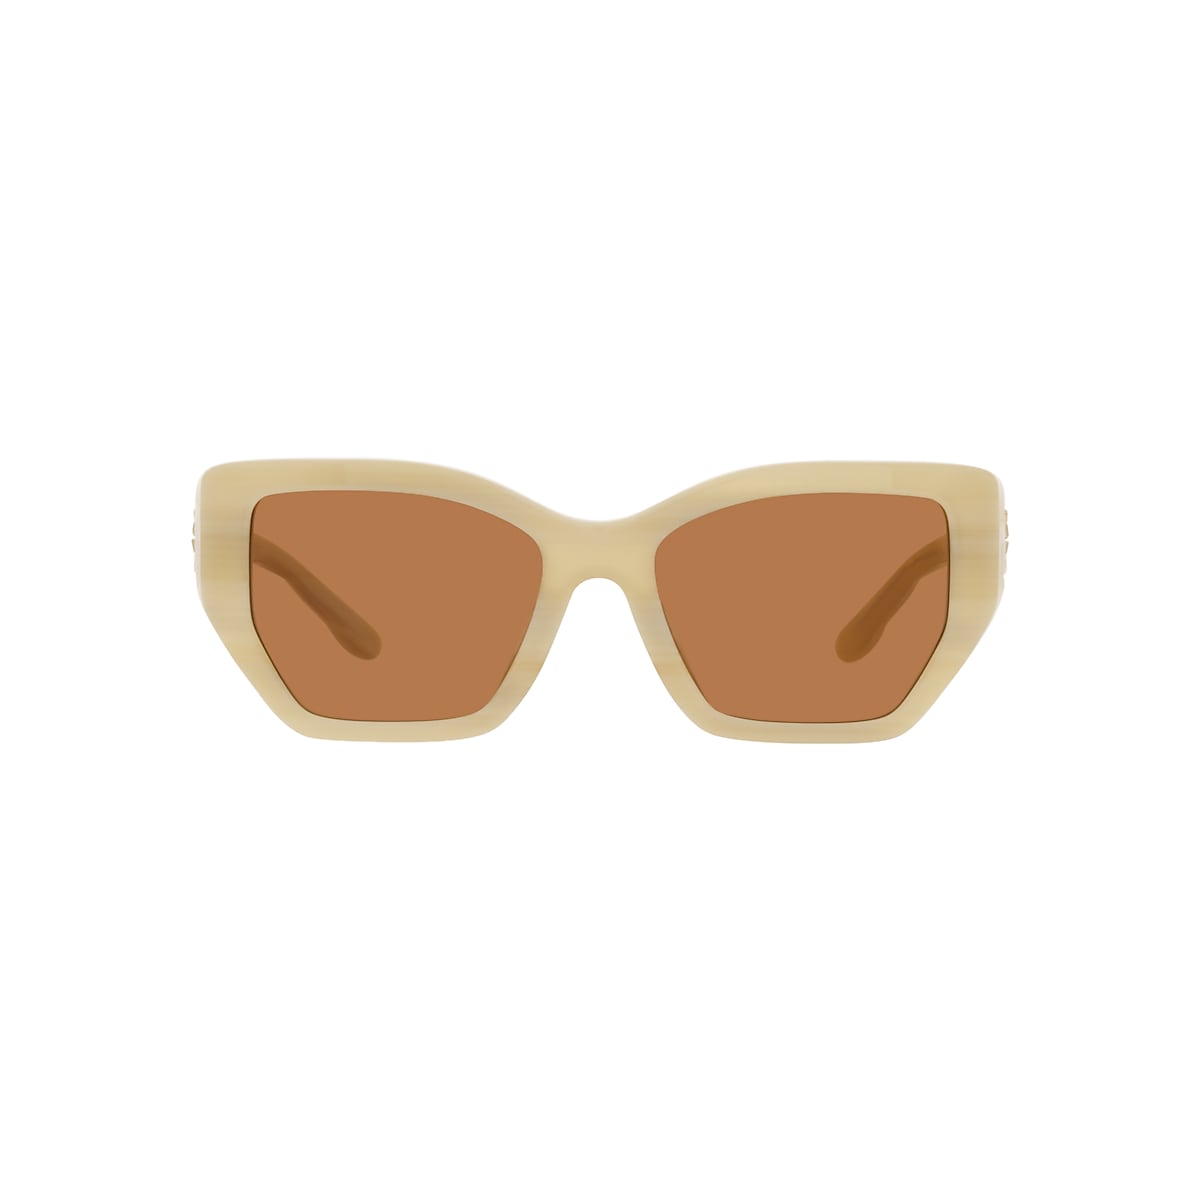 Tory Burch Kira Cat-eye Sunglasses in White